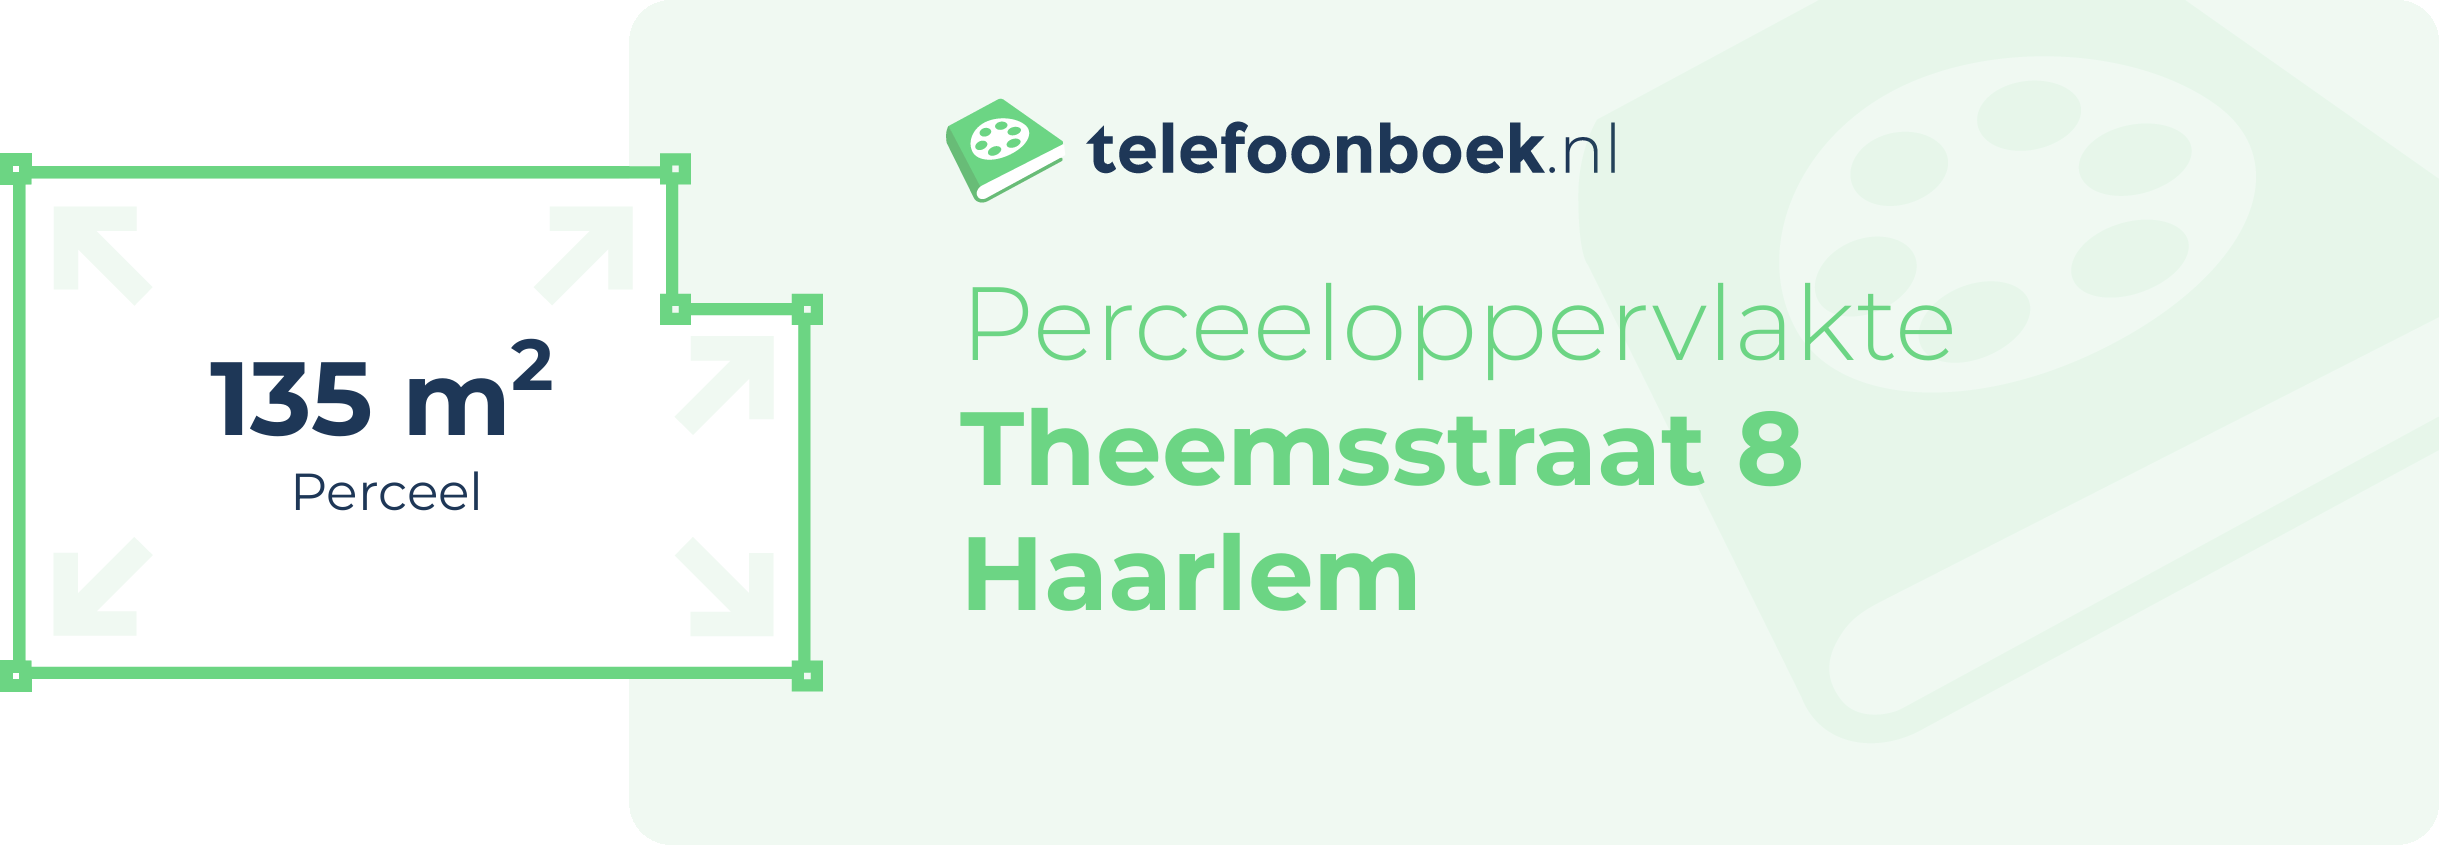 Perceeloppervlakte Theemsstraat 8 Haarlem